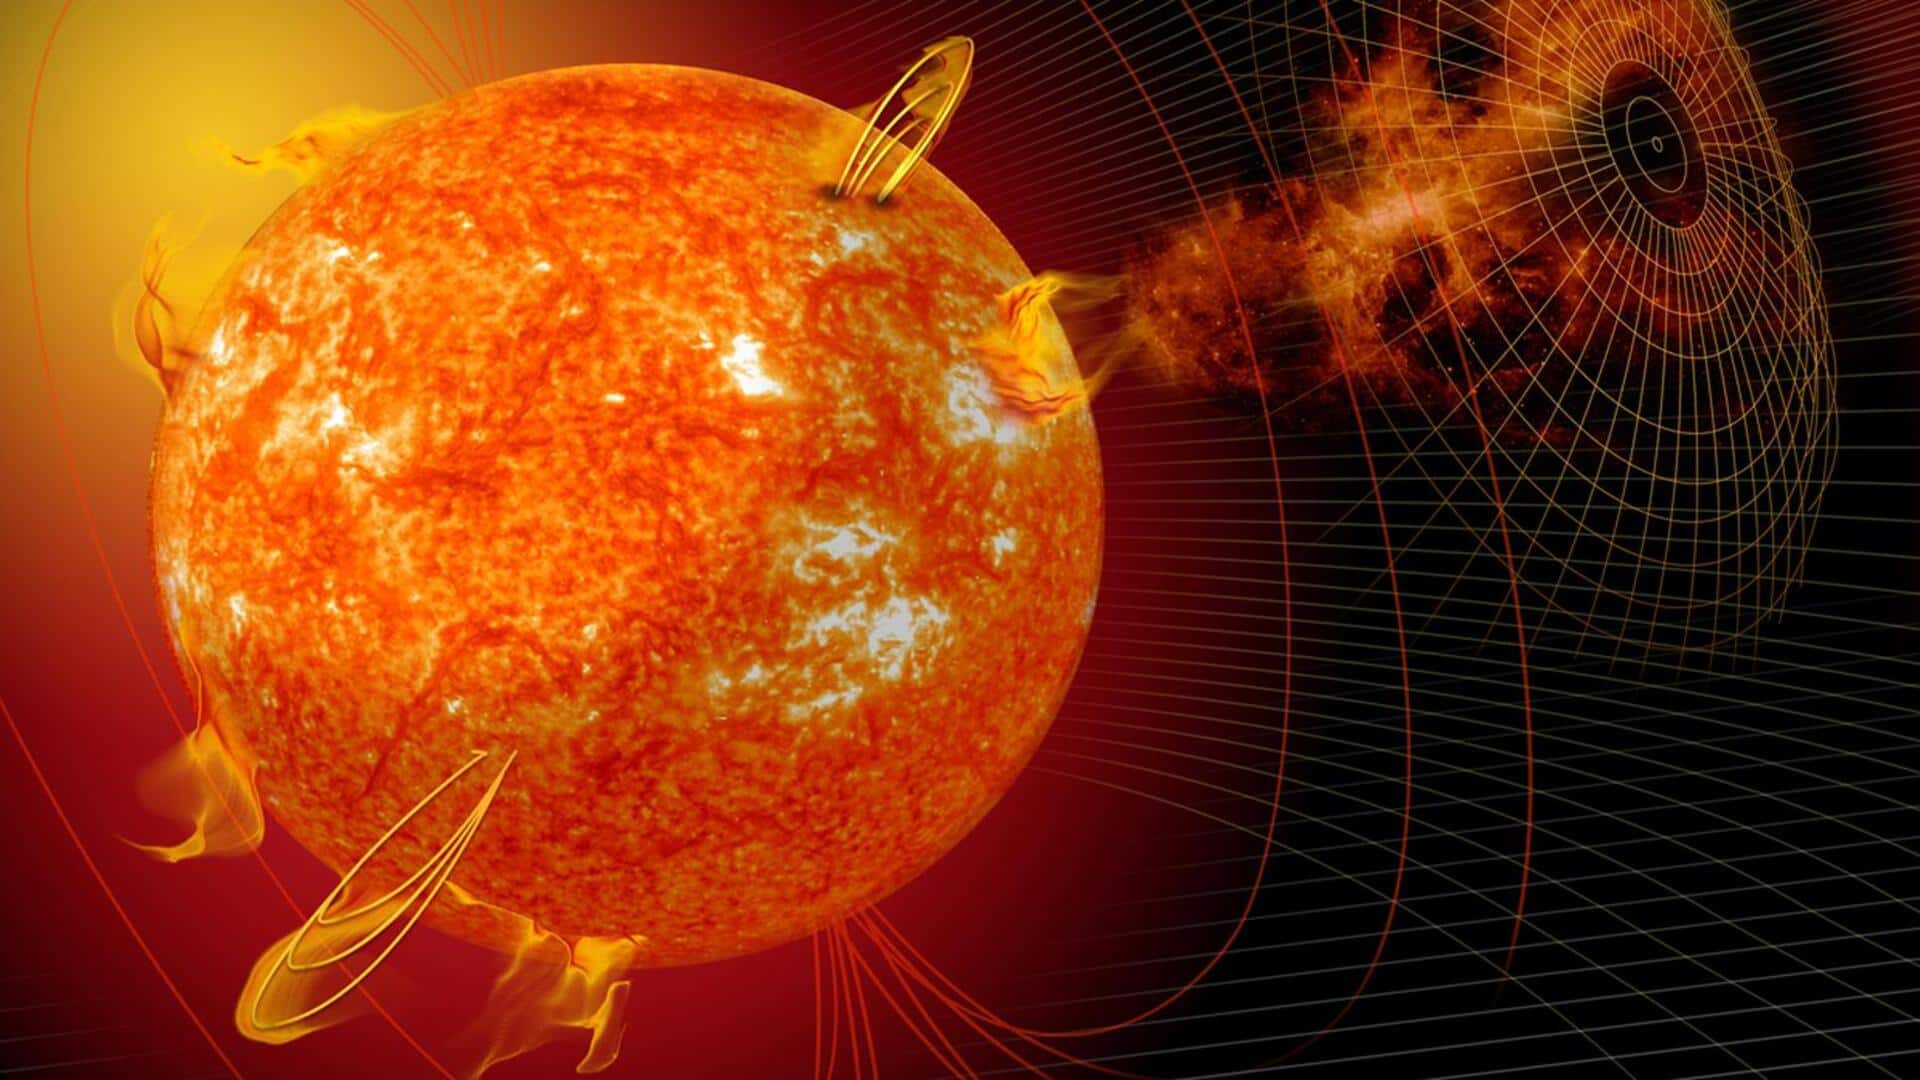 सनस्पॉट AR3363 में विस्फोट से उत्पन्न हुआ M-श्रेणी सोलर फ्लेयर, आ सकता है सौर तूफान